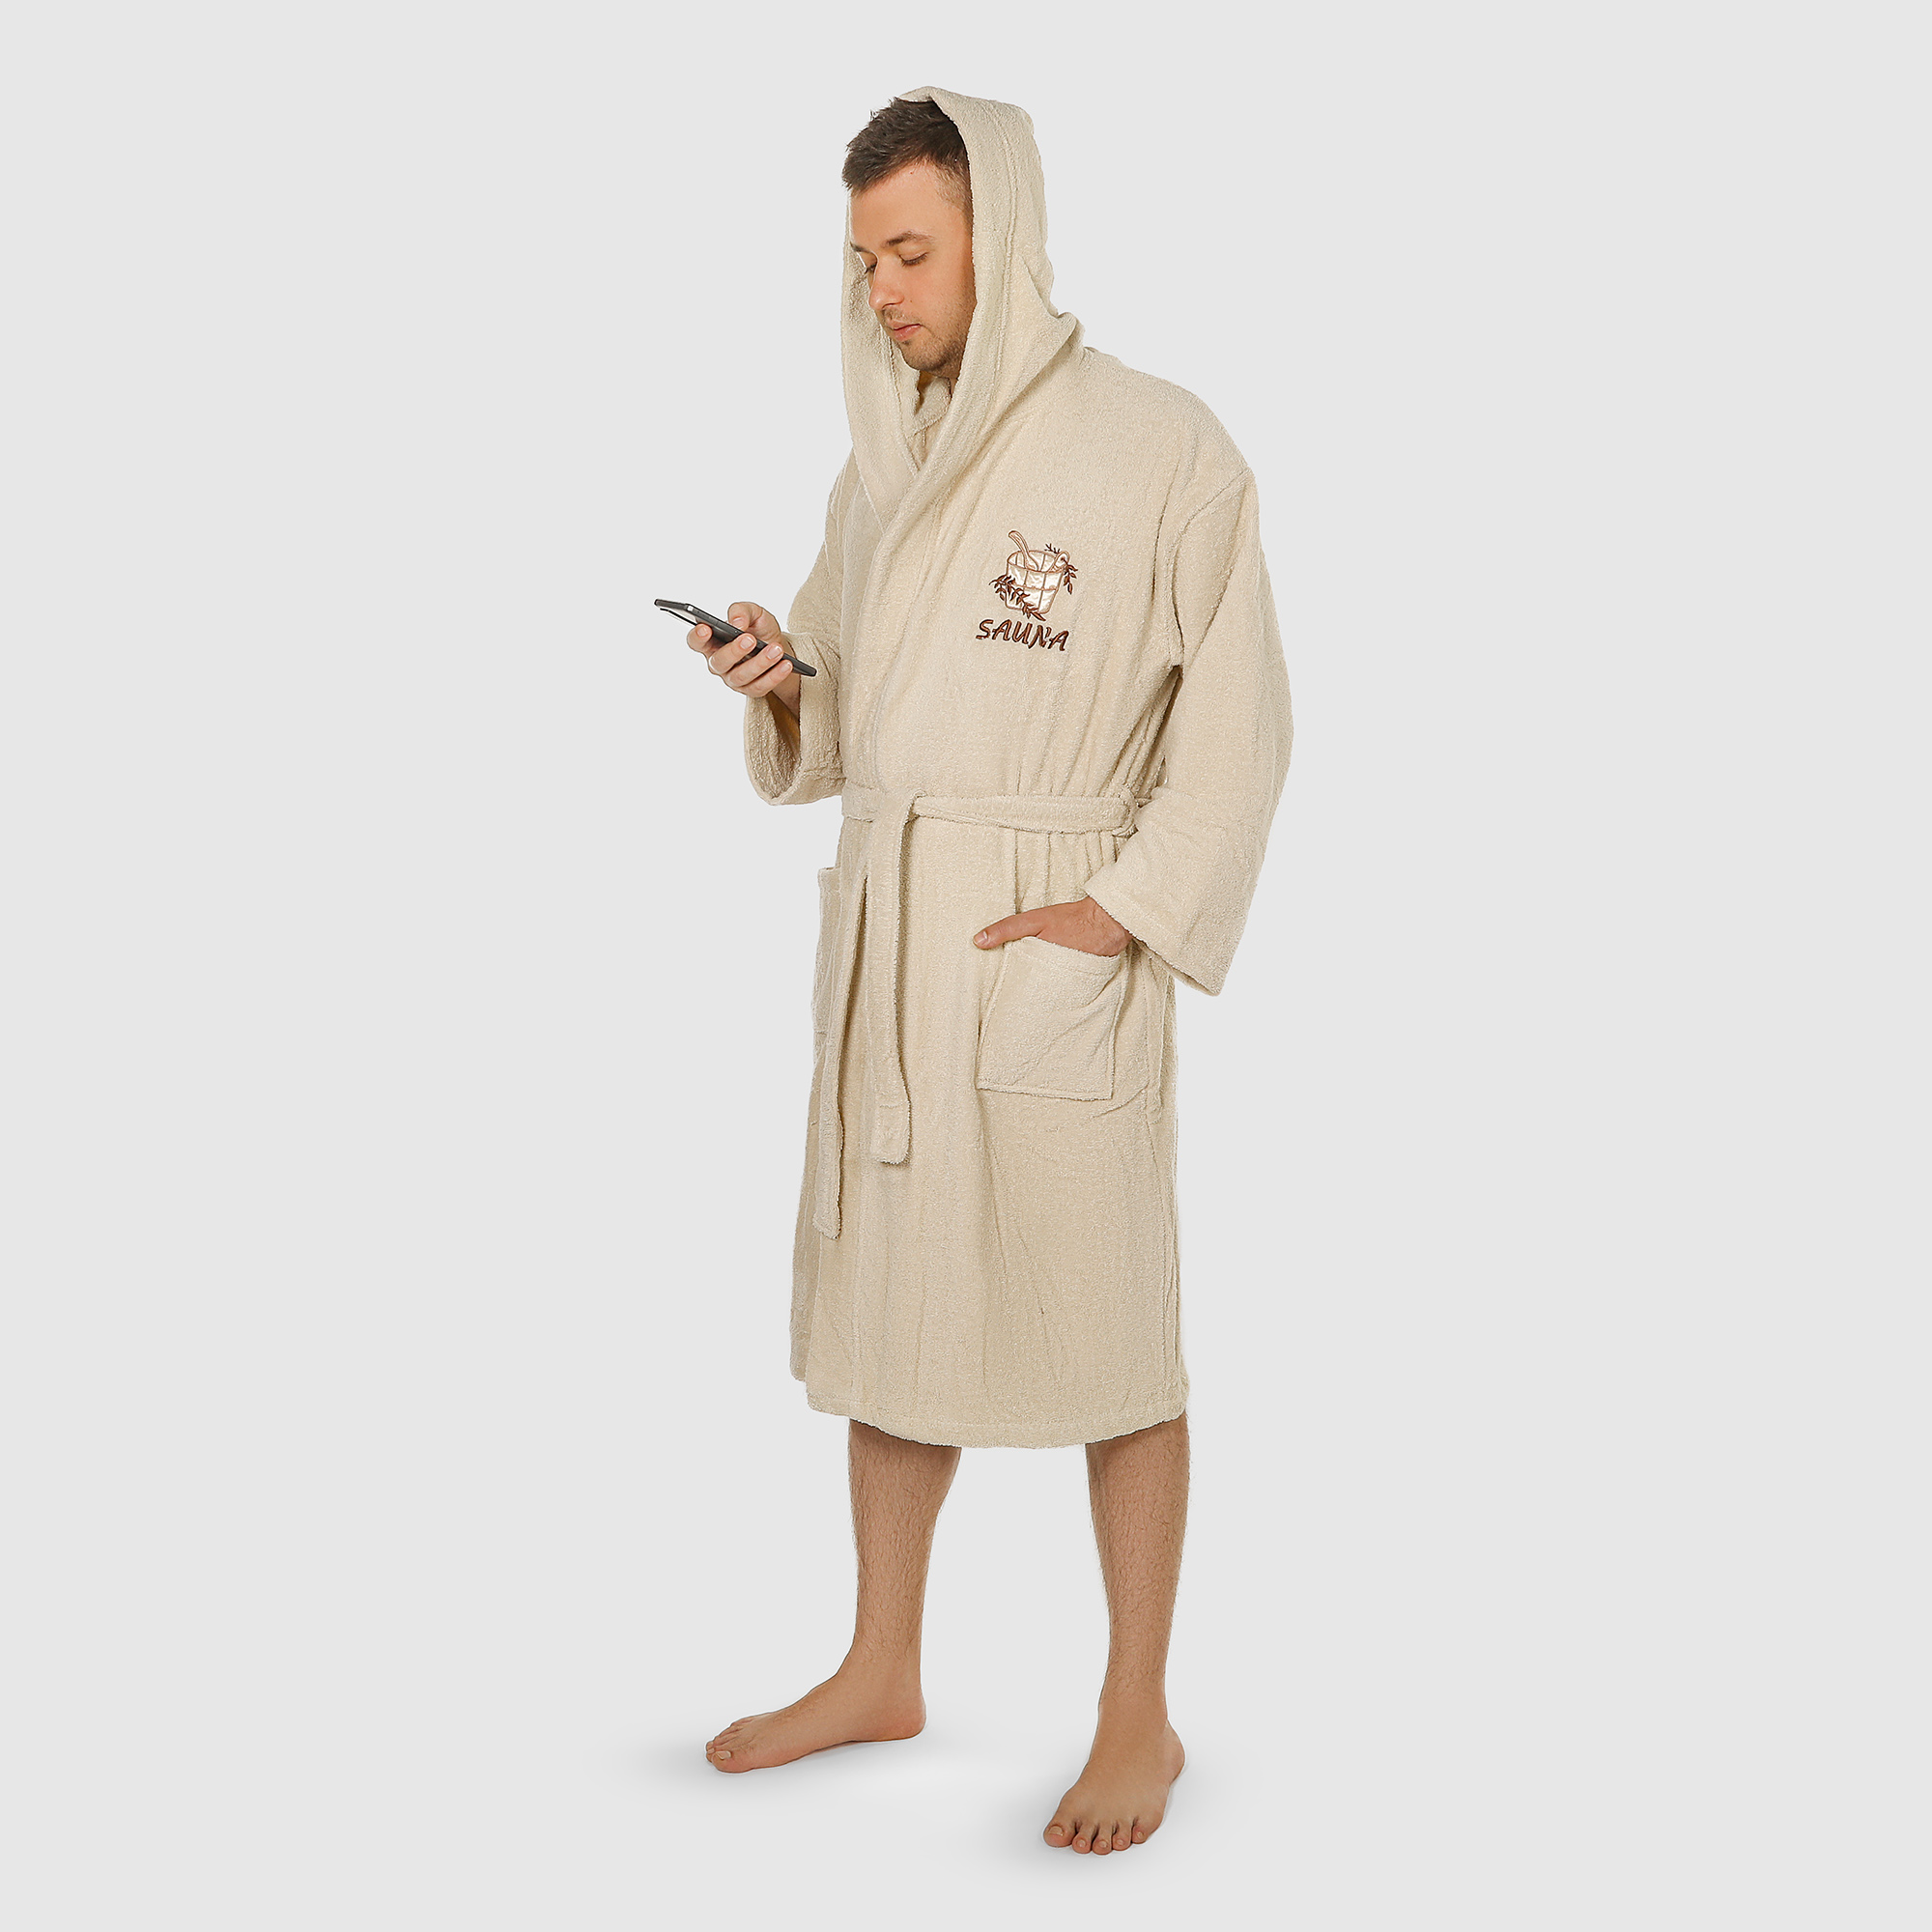 Халат мужской Asil Sauna brown XXXL махровый с капюшоном халат махровый asil sauna с капюшоном xxxl 83025031